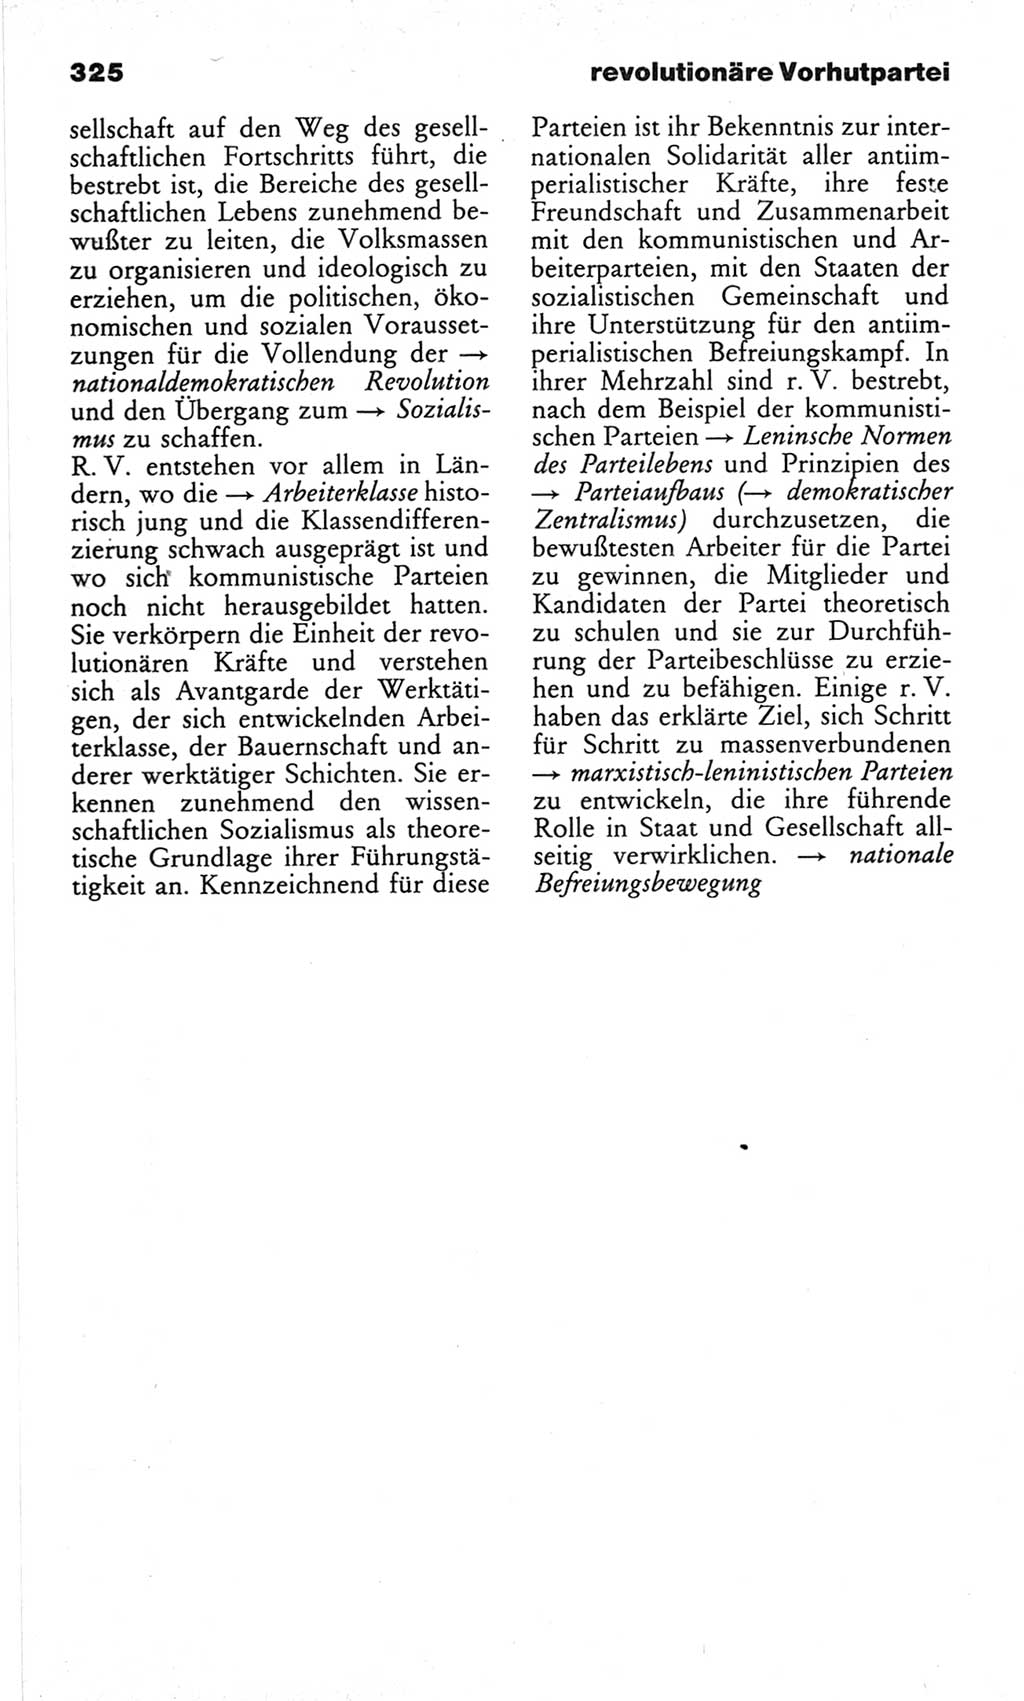 Wörterbuch des wissenschaftlichen Kommunismus [Deutsche Demokratische Republik (DDR)] 1982, Seite 325 (Wb. wiss. Komm. DDR 1982, S. 325)